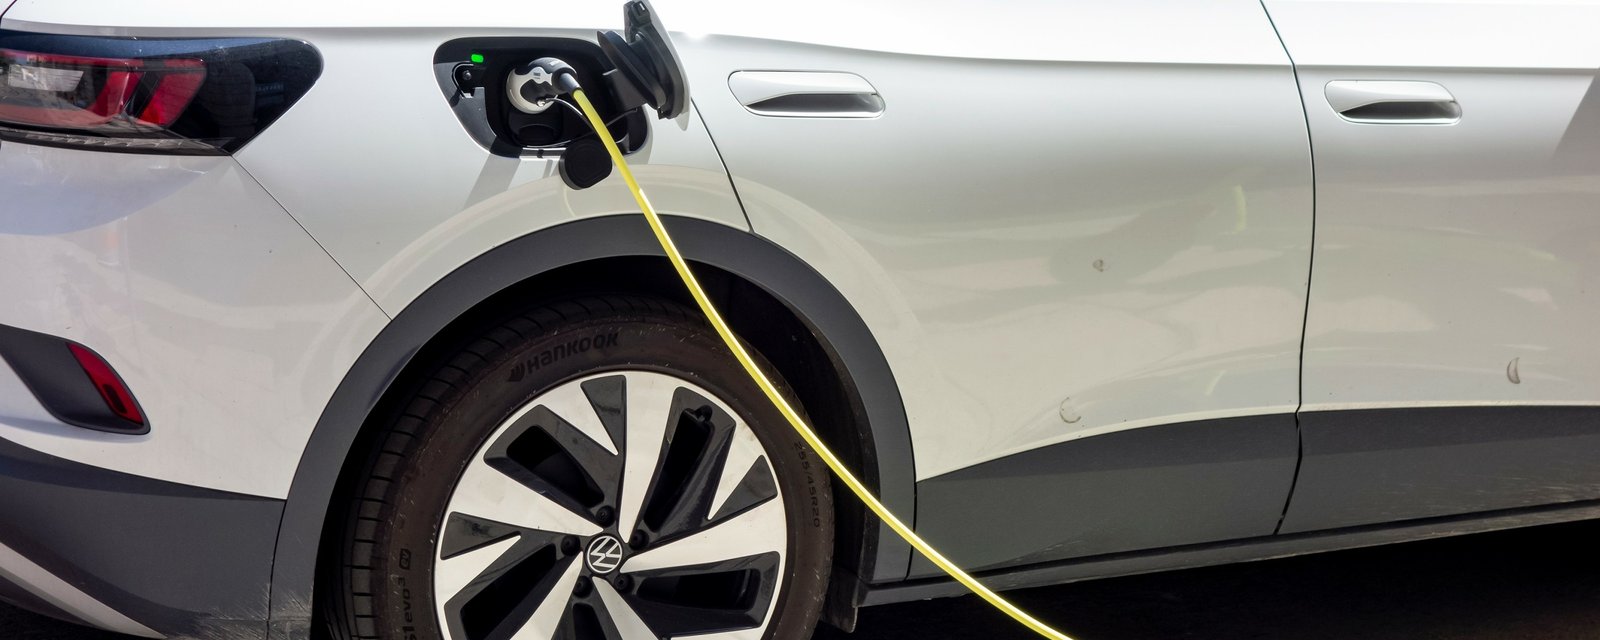 Fin des subventions pour les voitures électriques: voici ce qui pourrait arriver avec les prix.